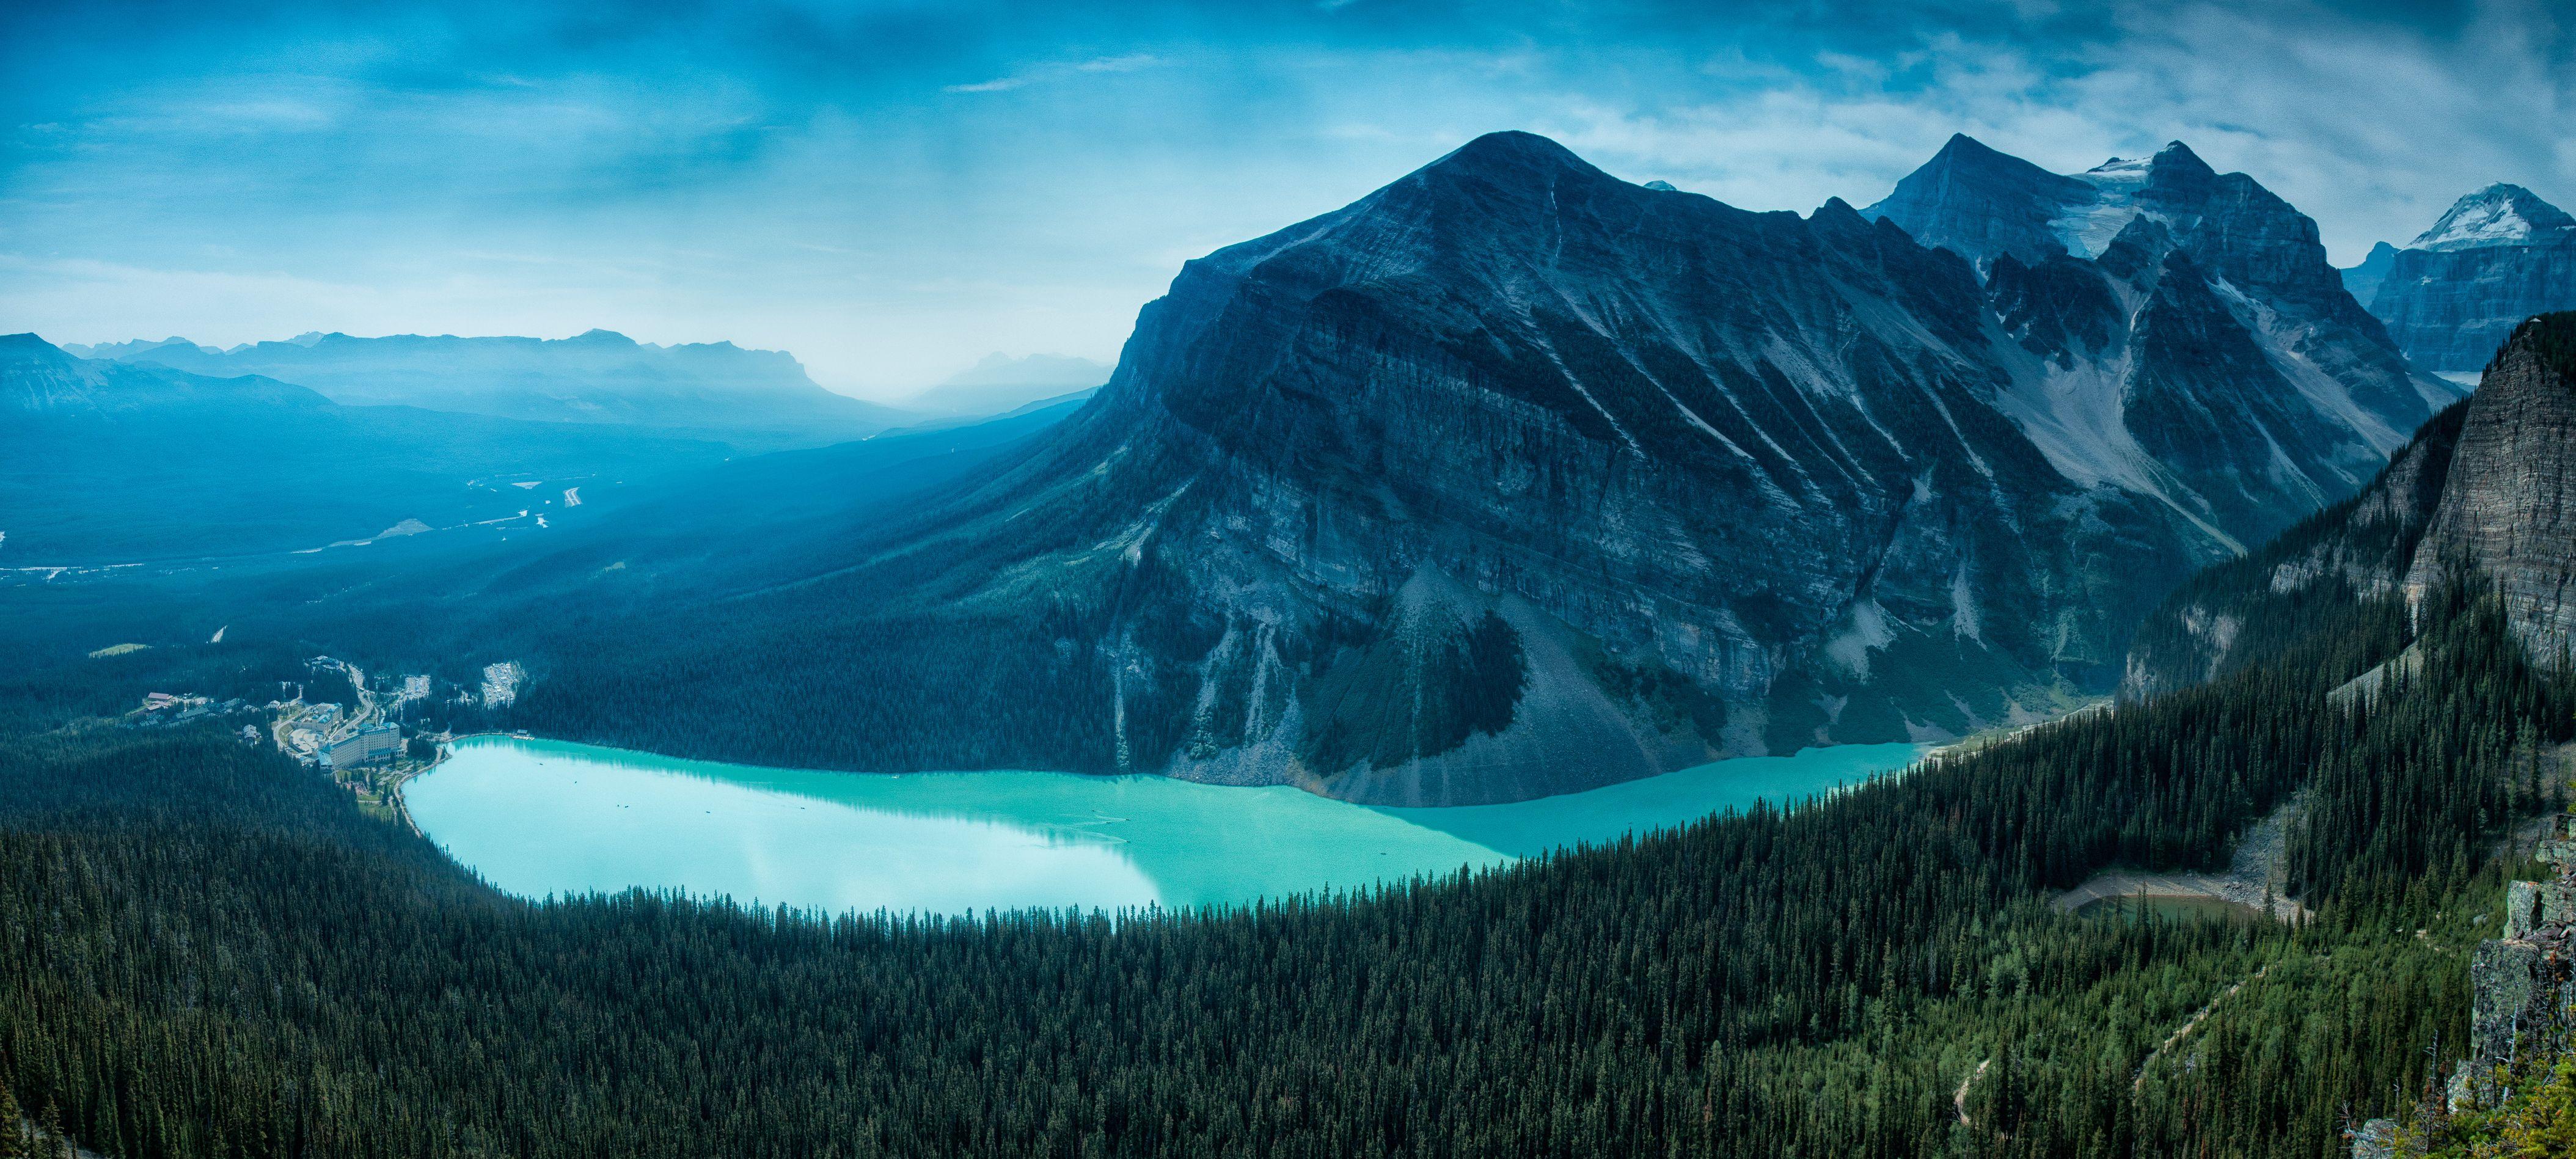 4216x1897 Hình nền Rockies Canada, Hồ Louise, Vườn quốc gia Banff, Canada, 4K, Thiên nhiên ,.  Hình nền cho iPhone, Android, Di động và Máy tính để bàn